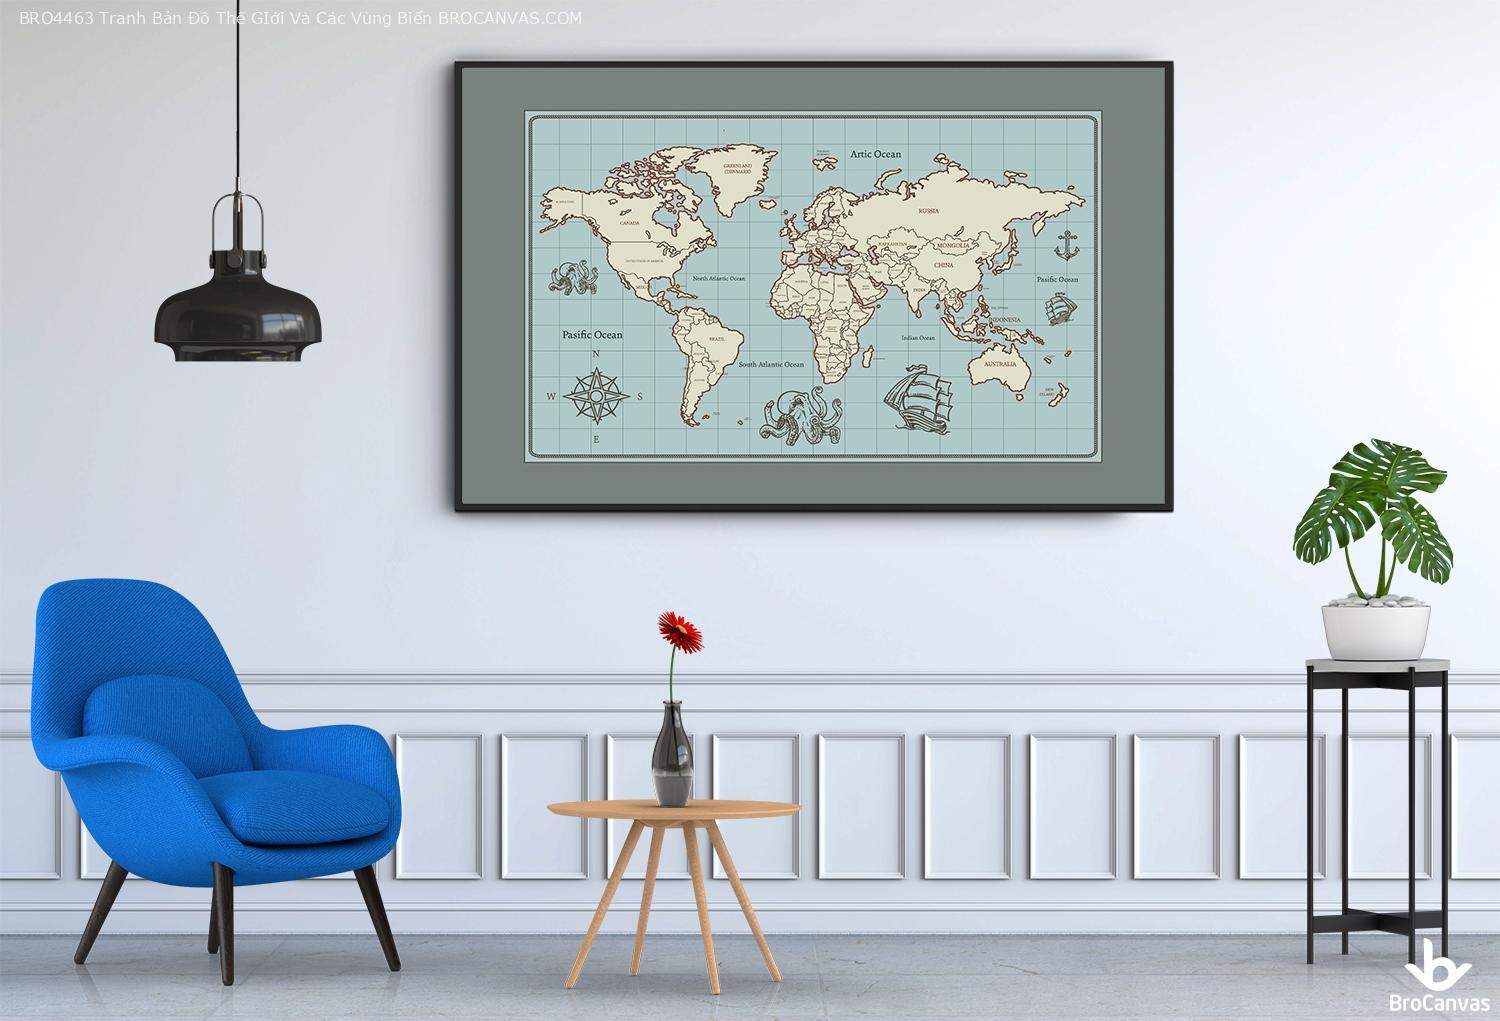 Bro4463 tranh bản đồ thế giới và các vùng biển